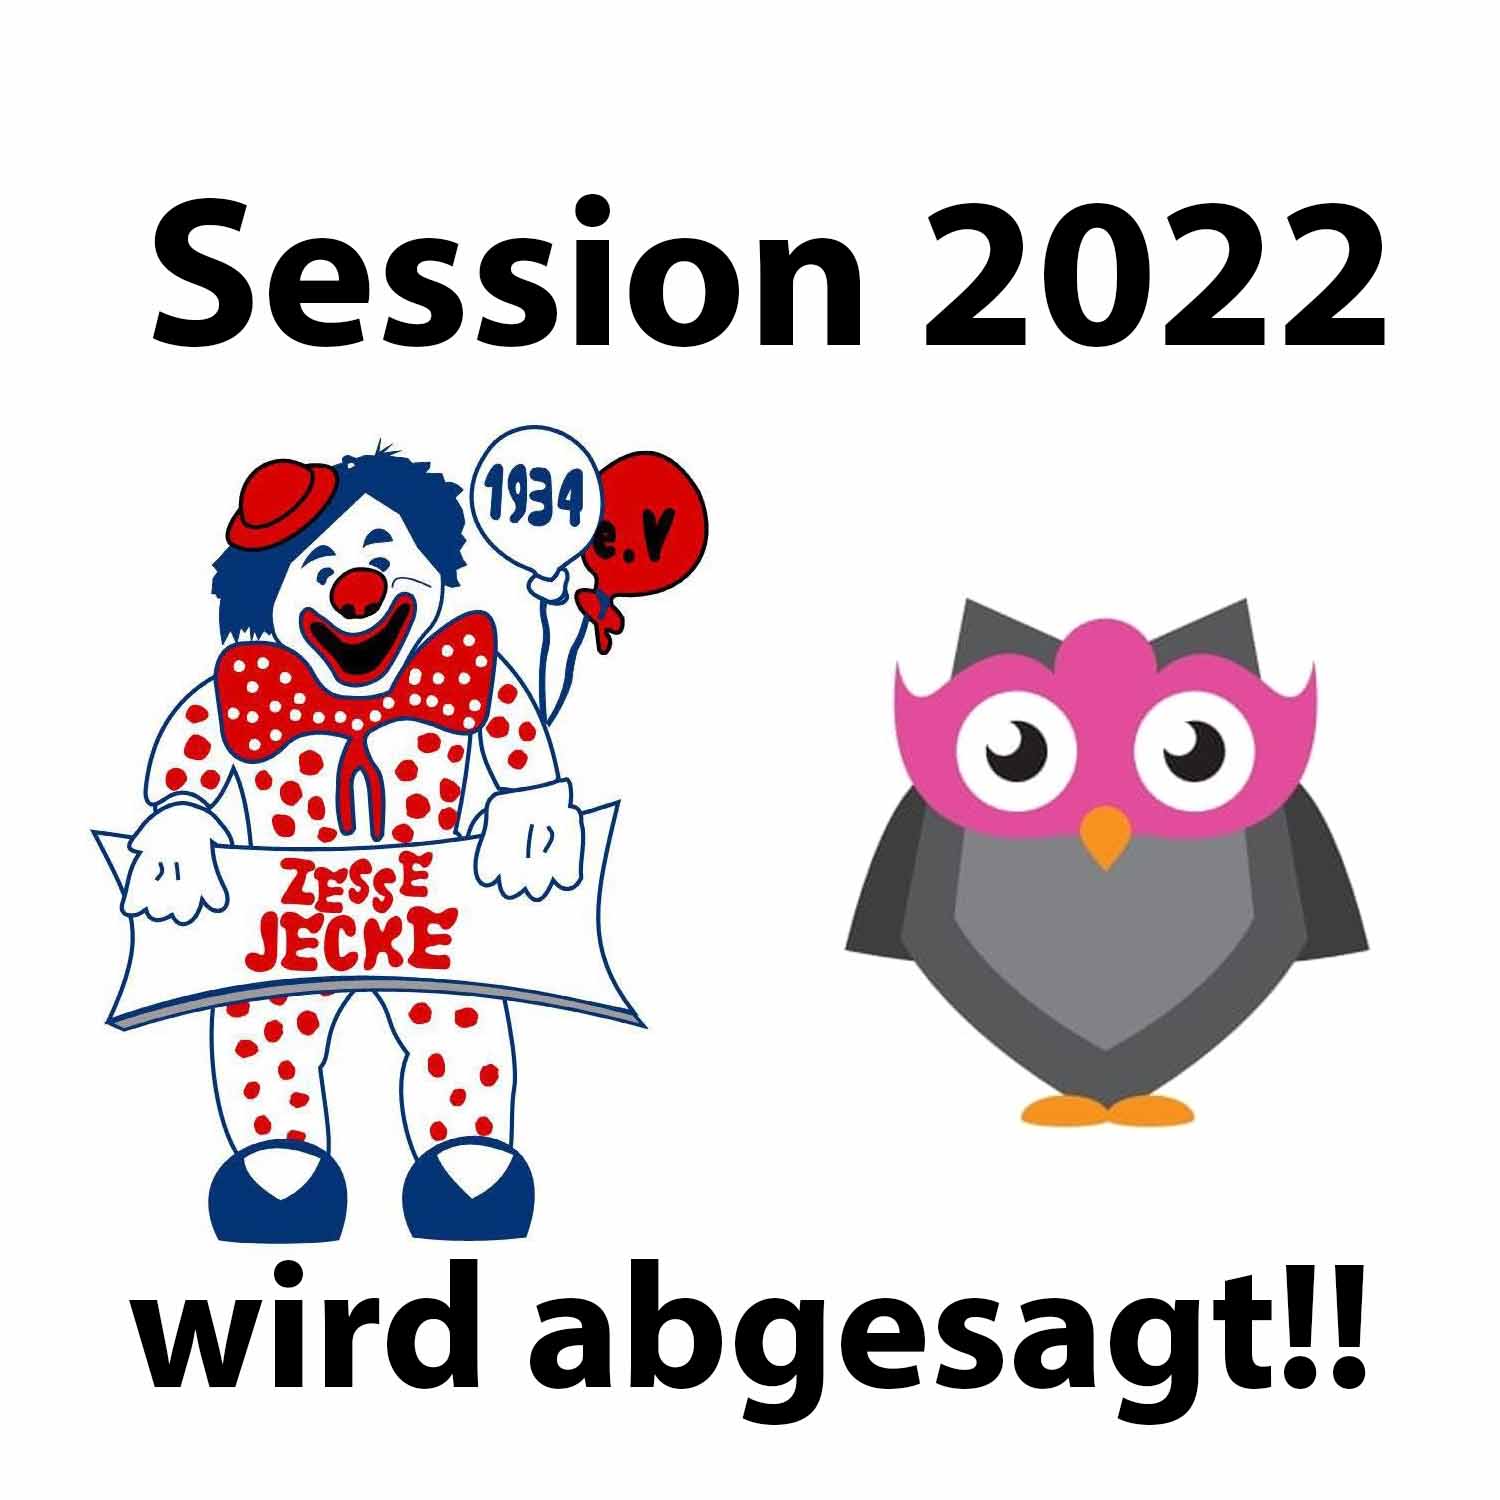 Session 2022 wird abgesagt